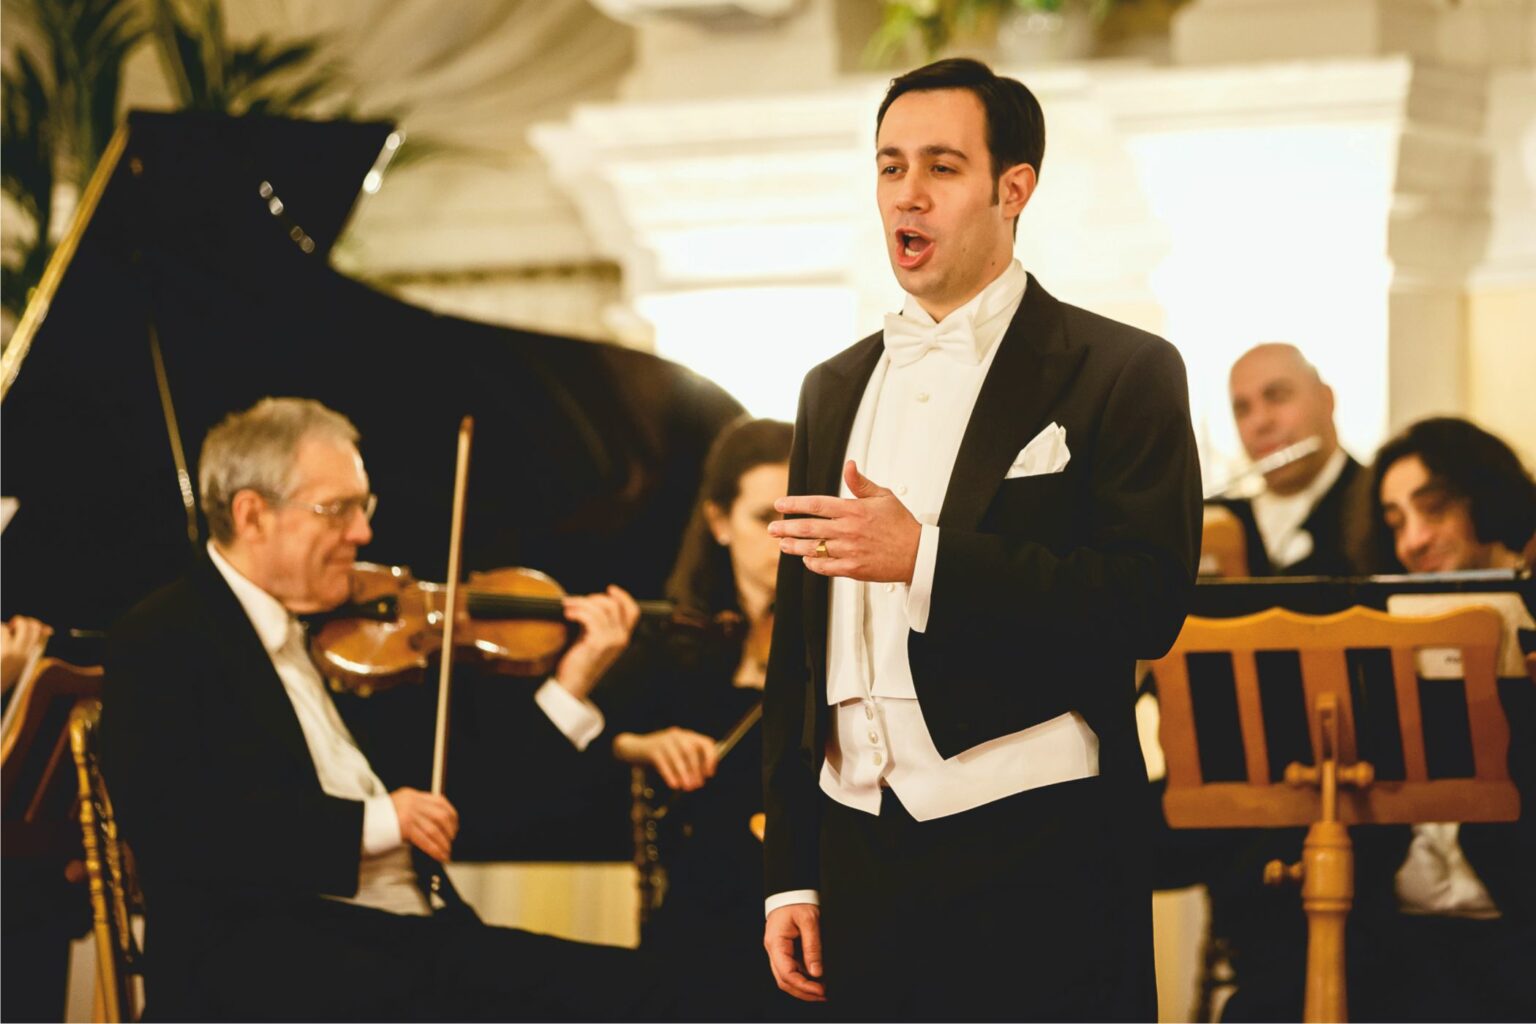 Mann singt bei einem klassischen Konzert mit Orchester im Hintergrund